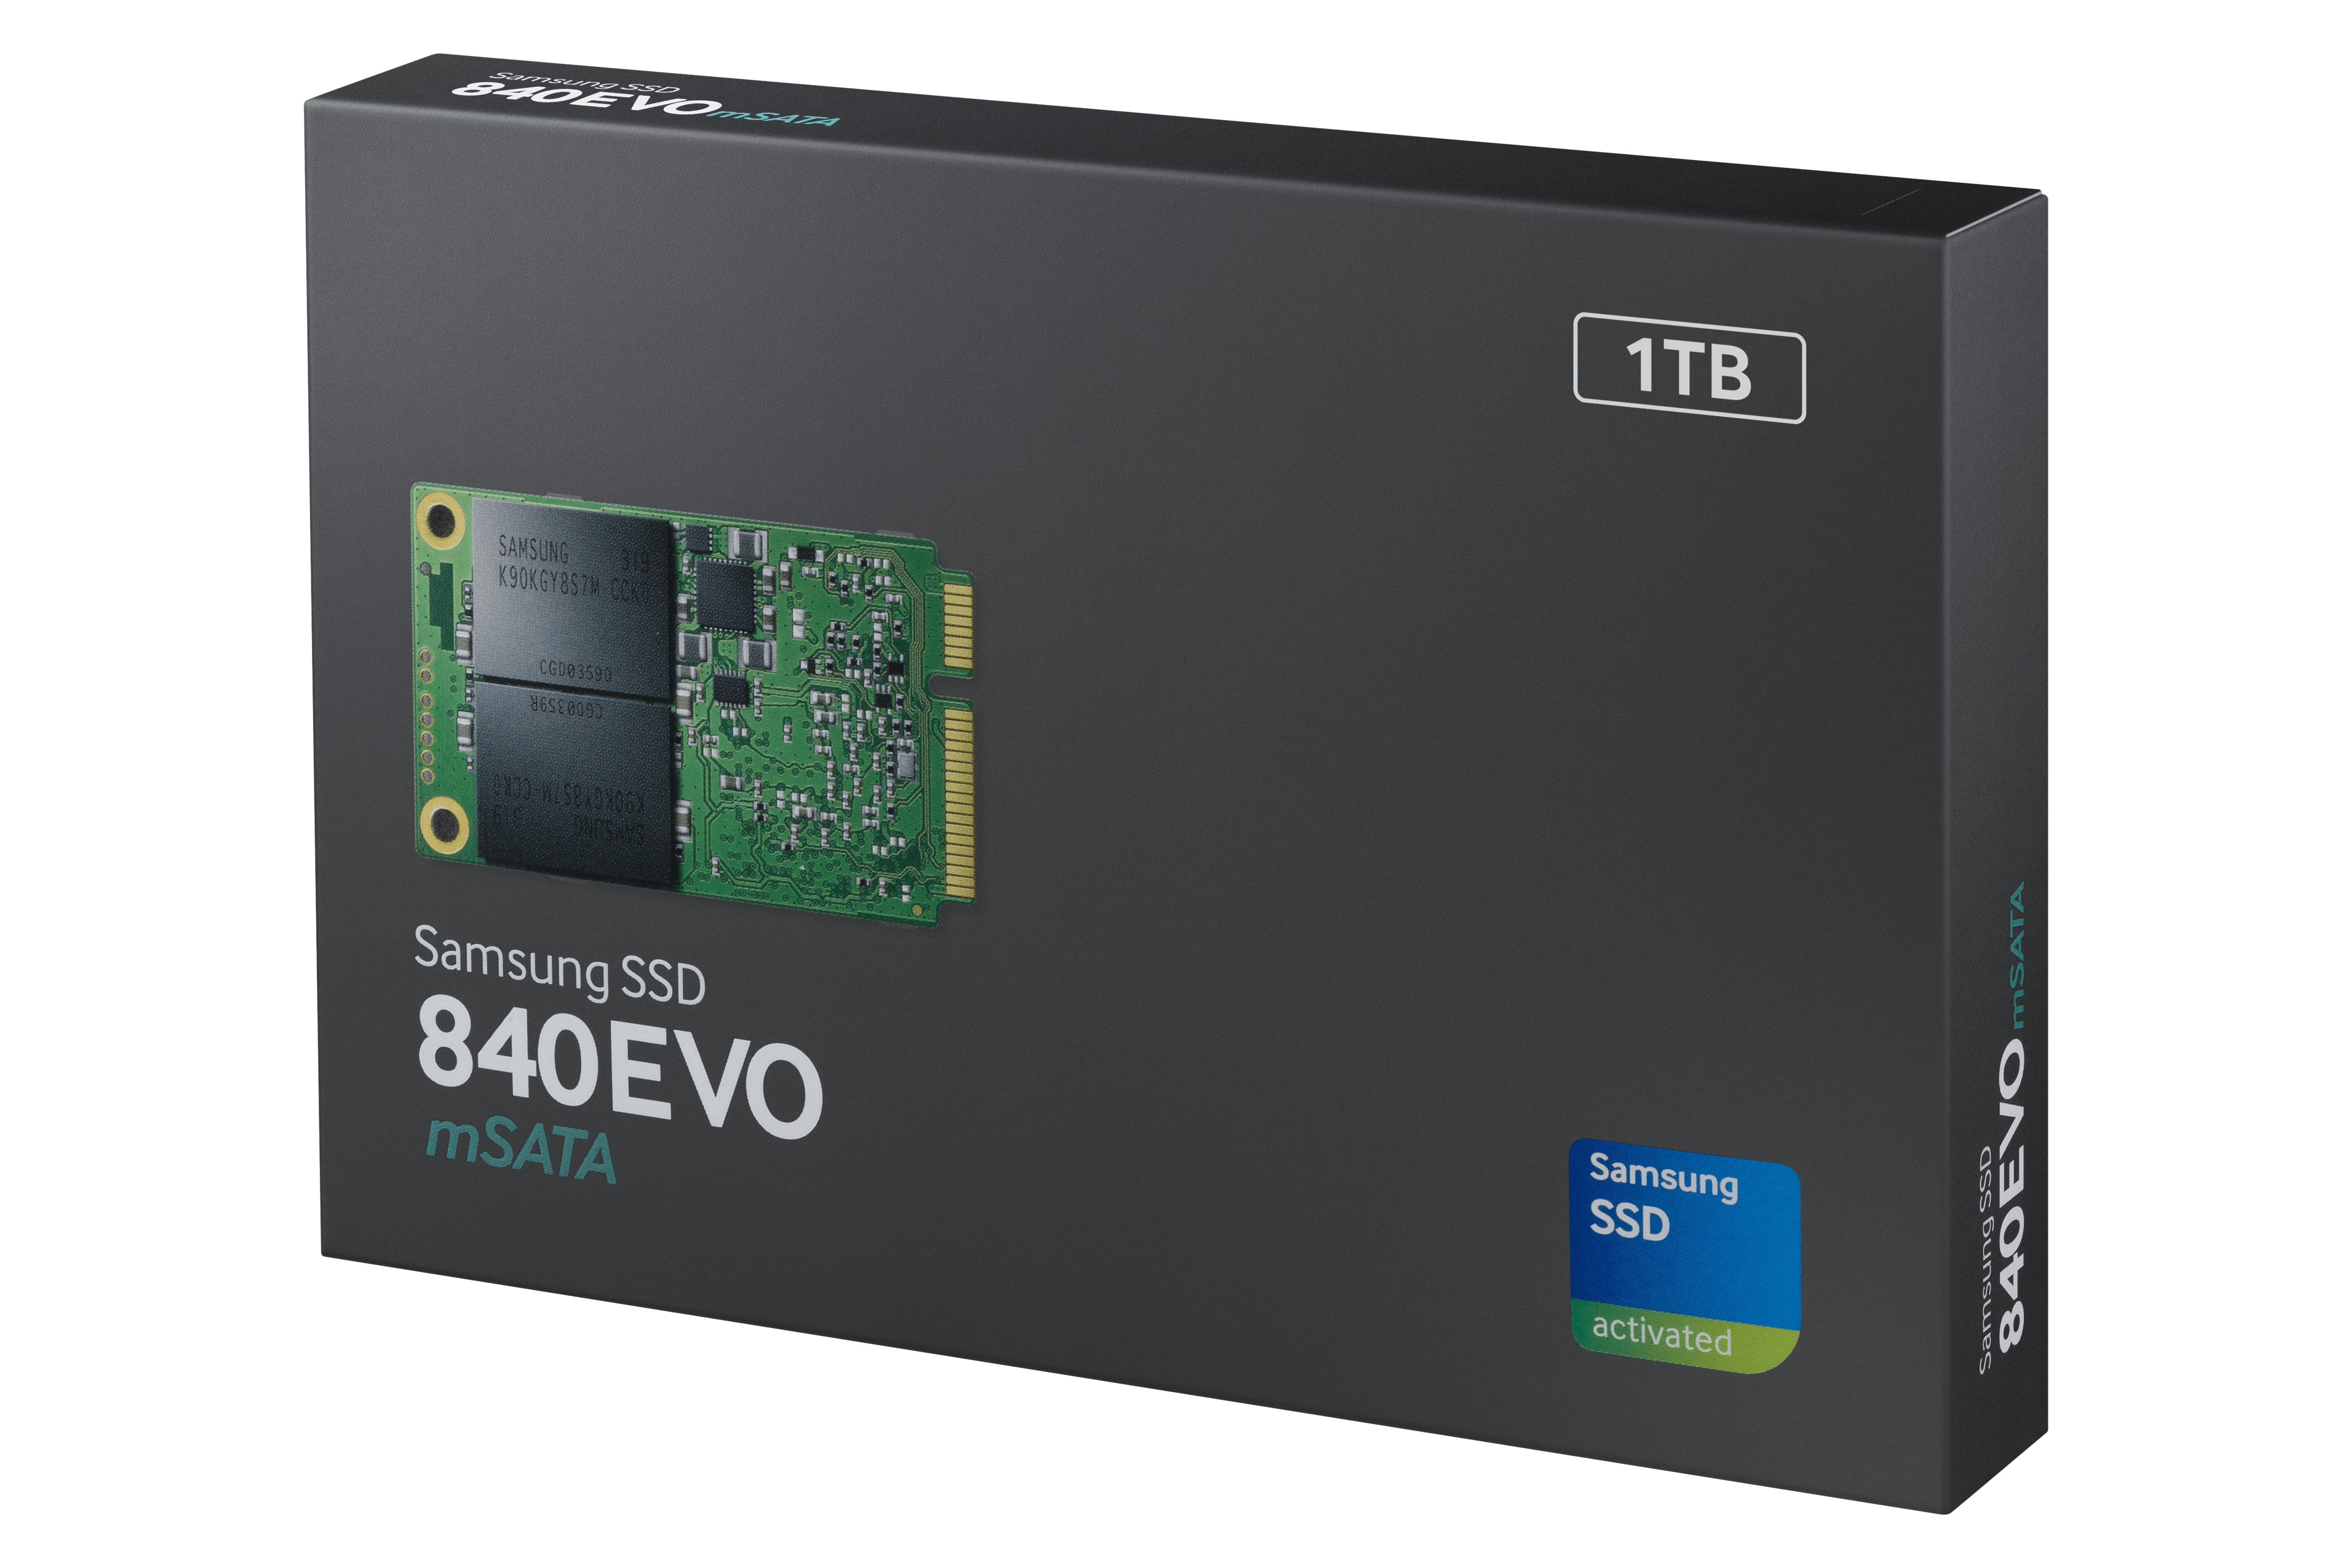 Die neue SSD EVO mSATA Festplatte von Samsung in ihrer edlen Verpackung.